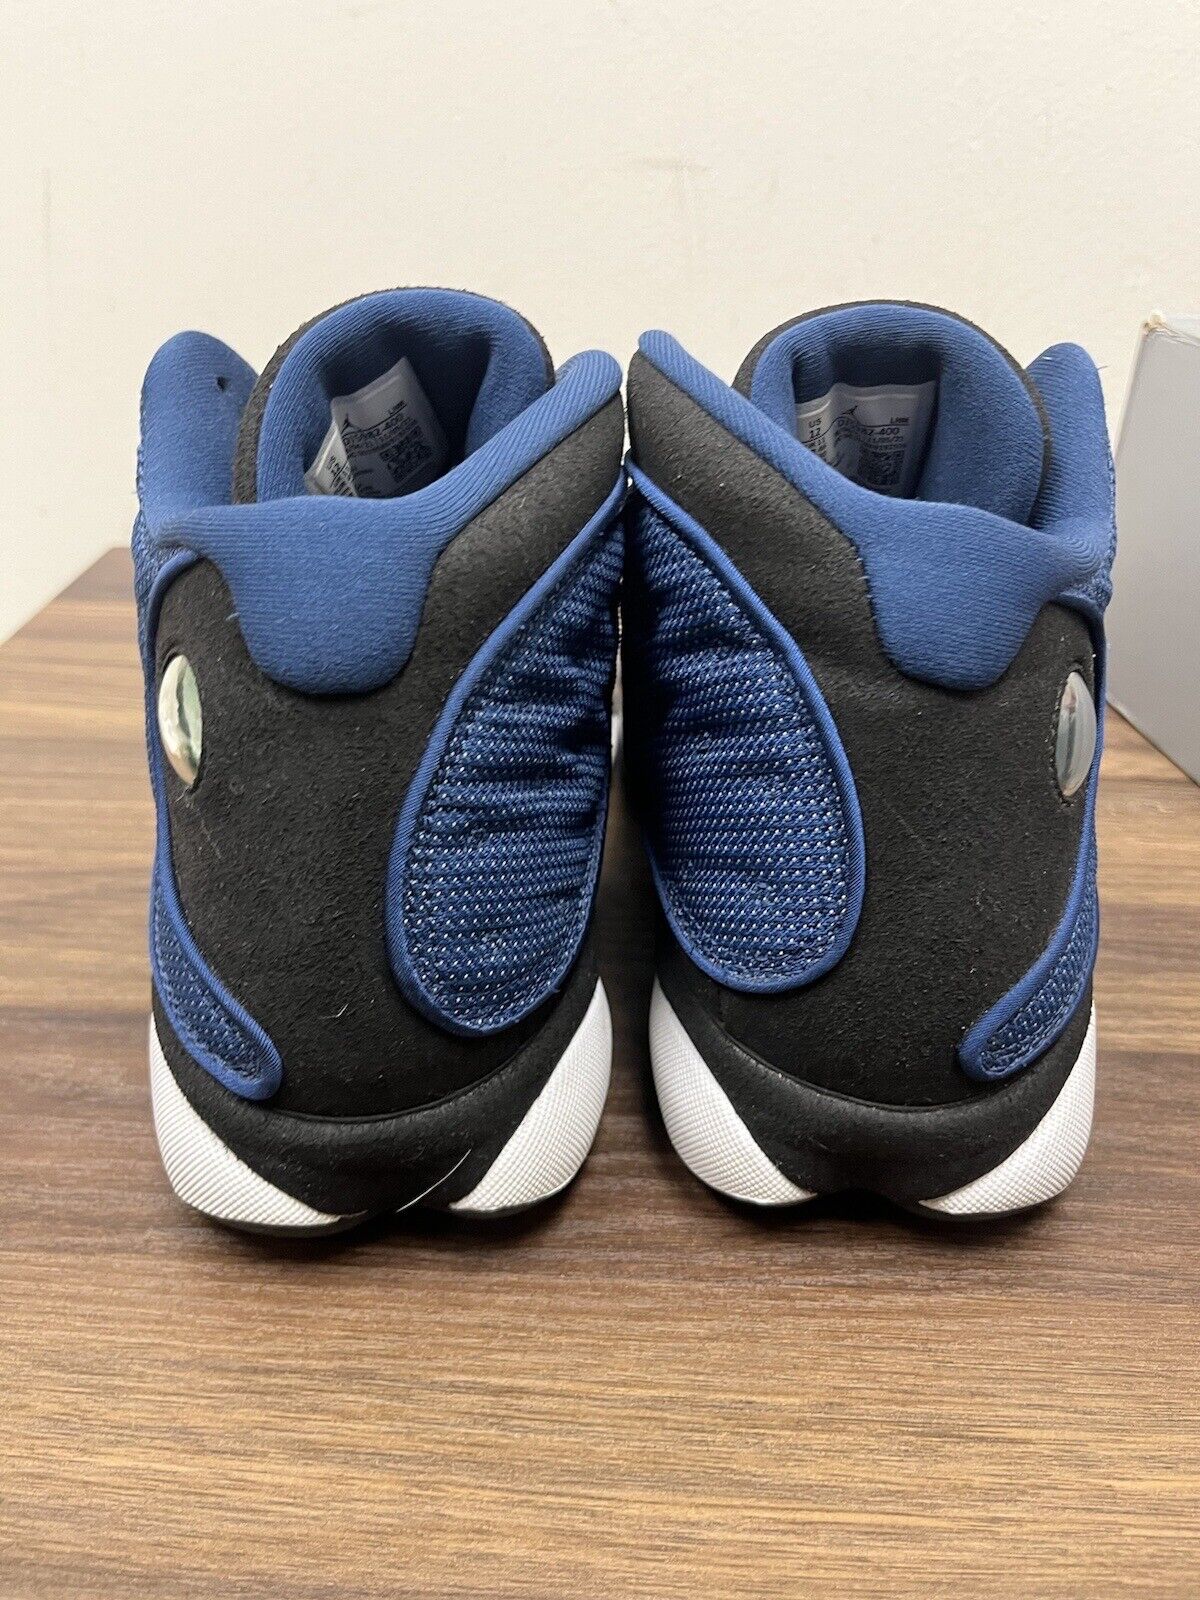 Nike Air Jordan 13 Brave Blue Size 12 Dj5982-400 OG XIII